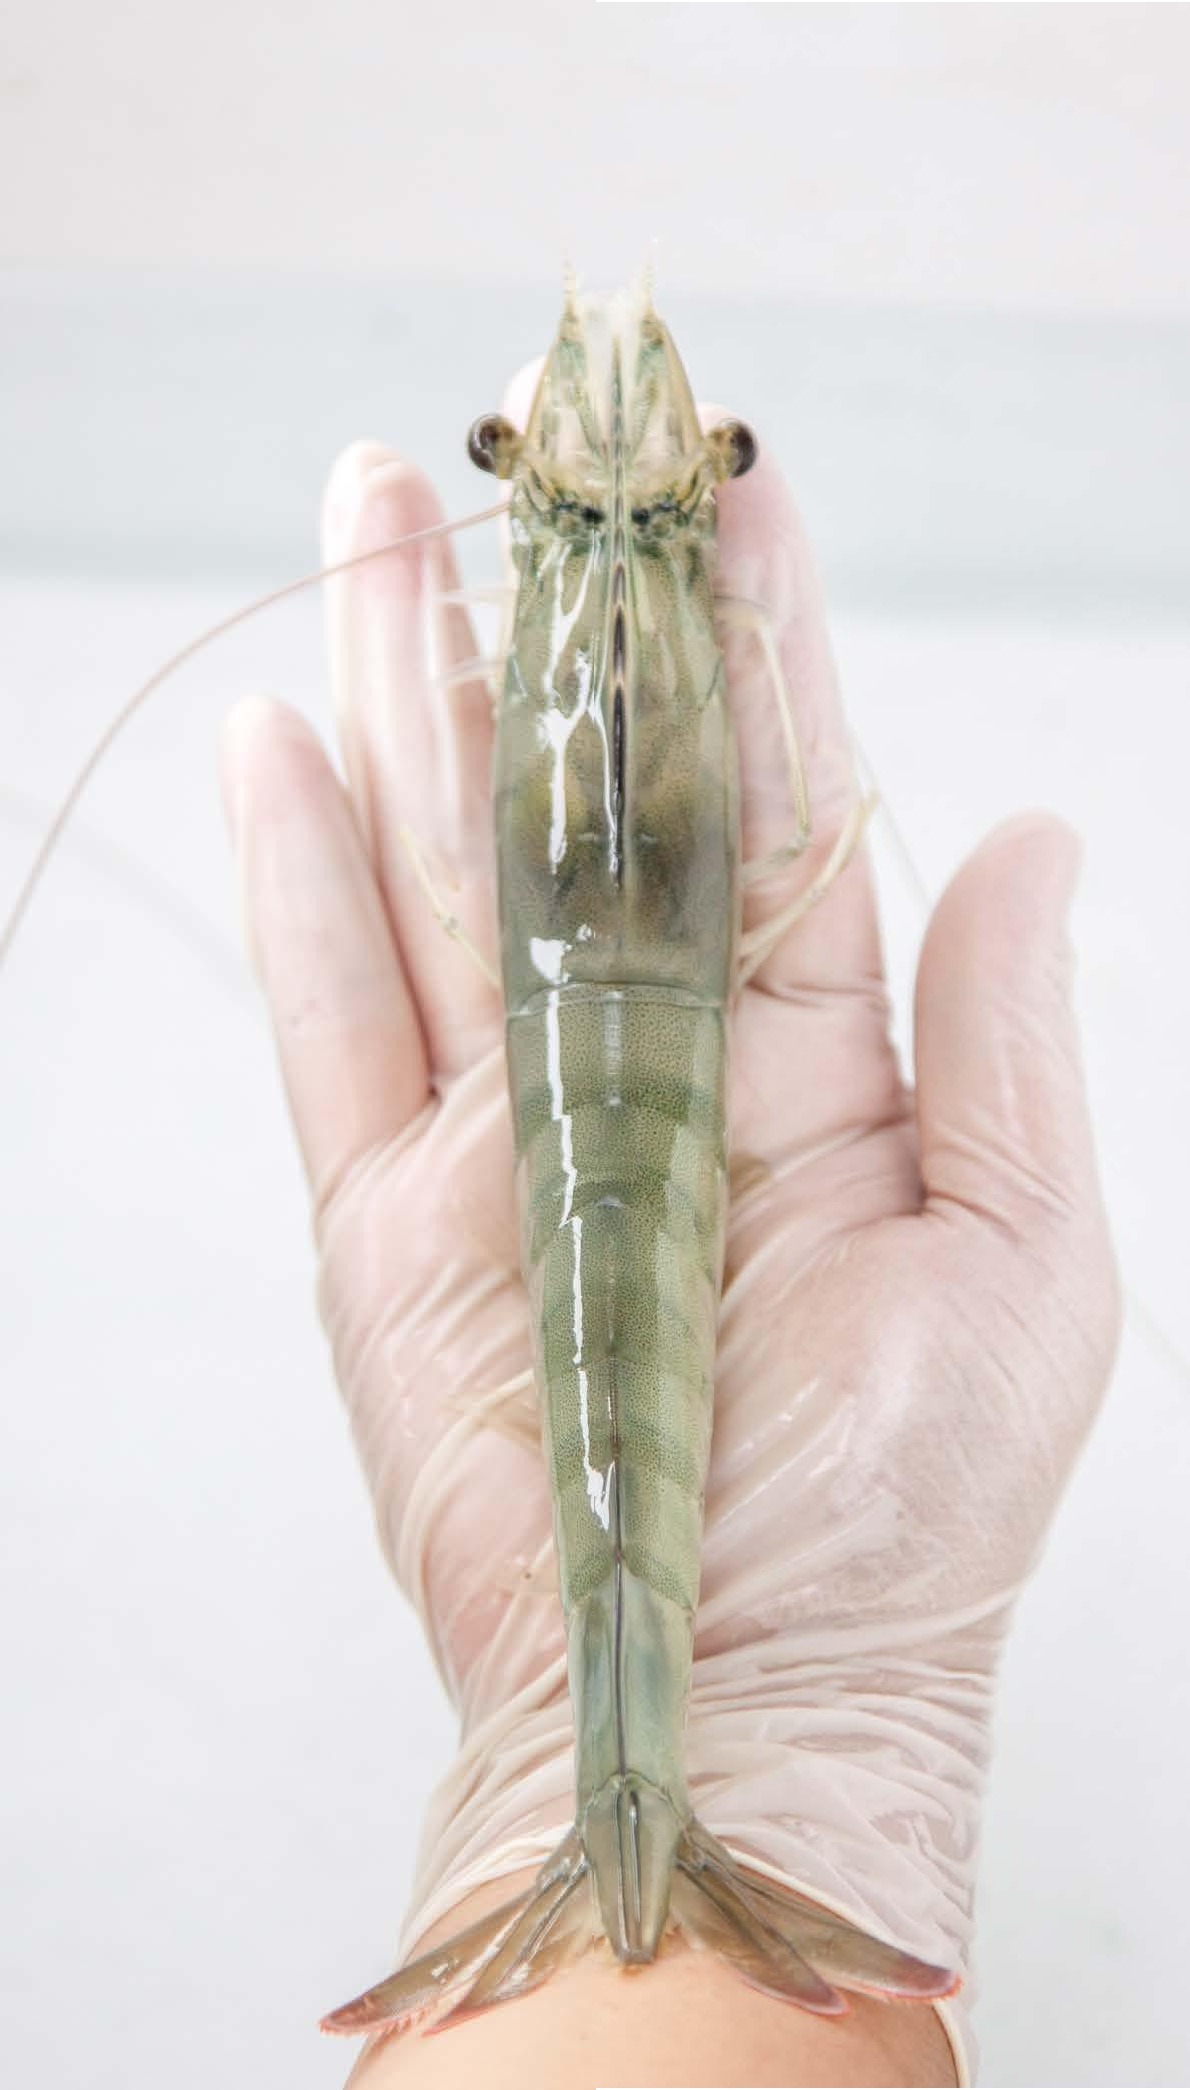 Non-Invasive Methods for Assessing the Welfare of Farmed White-Leg Shrimp (Penaeus vannamei)